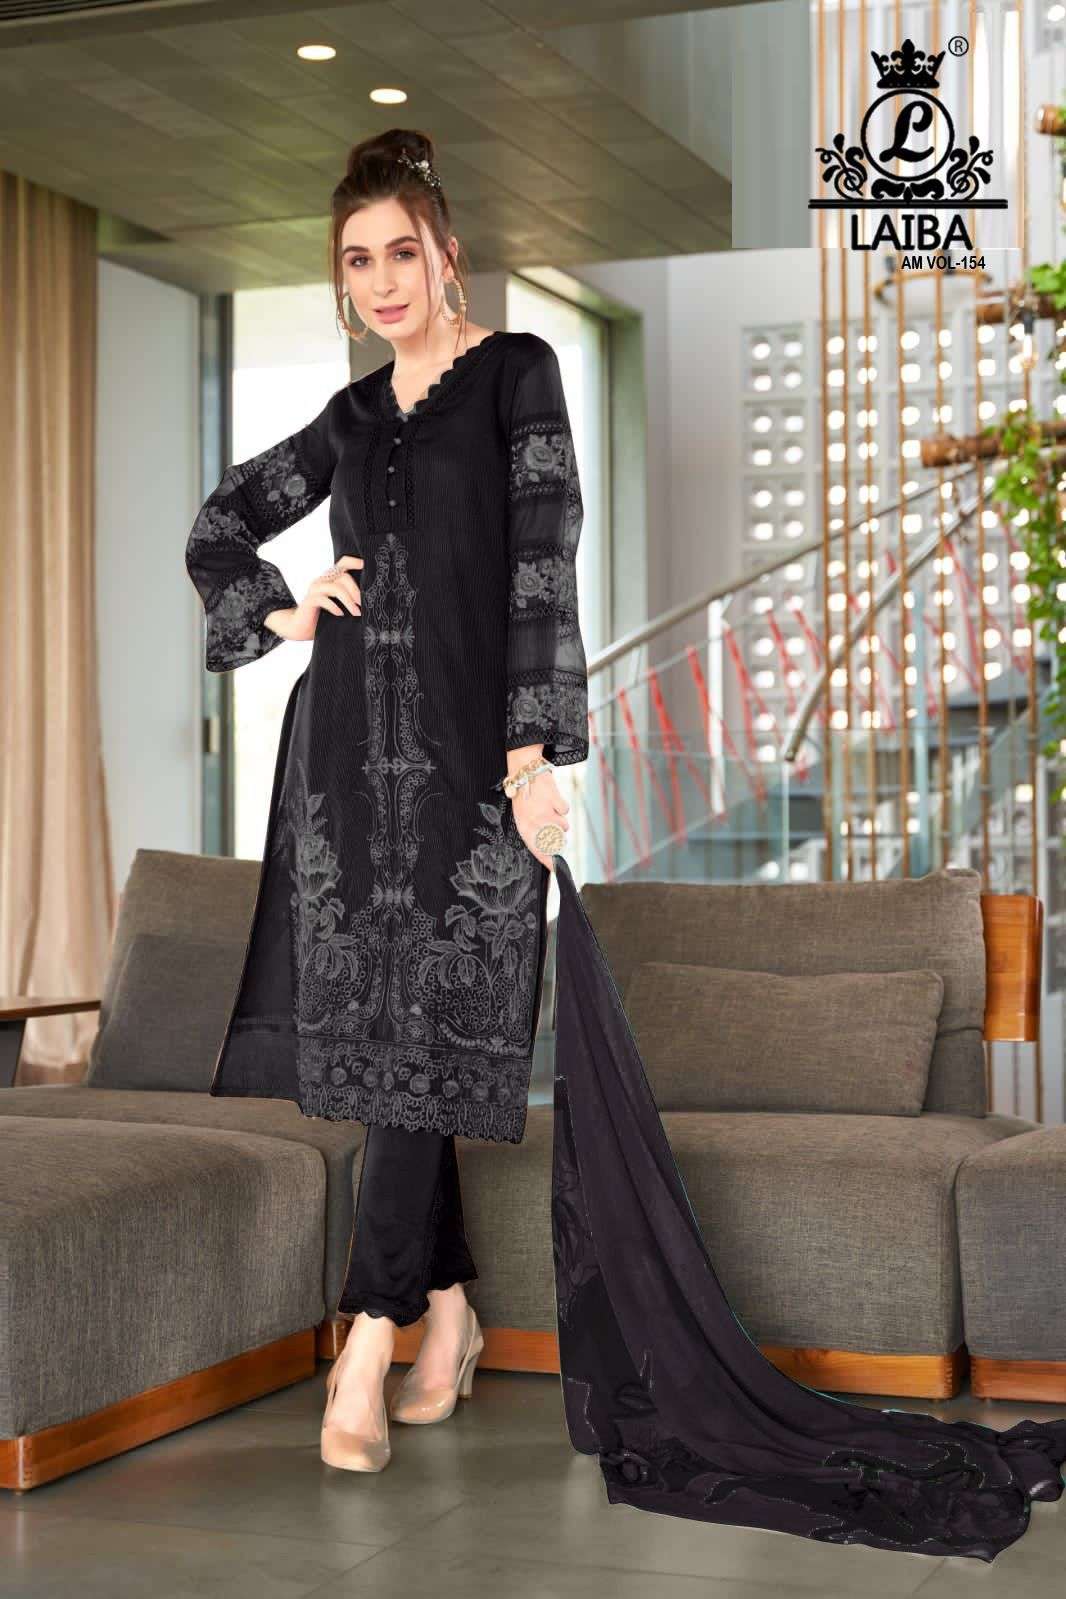 laiba am vol-154 new colour pure georgette designer pakistani salwar suits wholesale price surat 